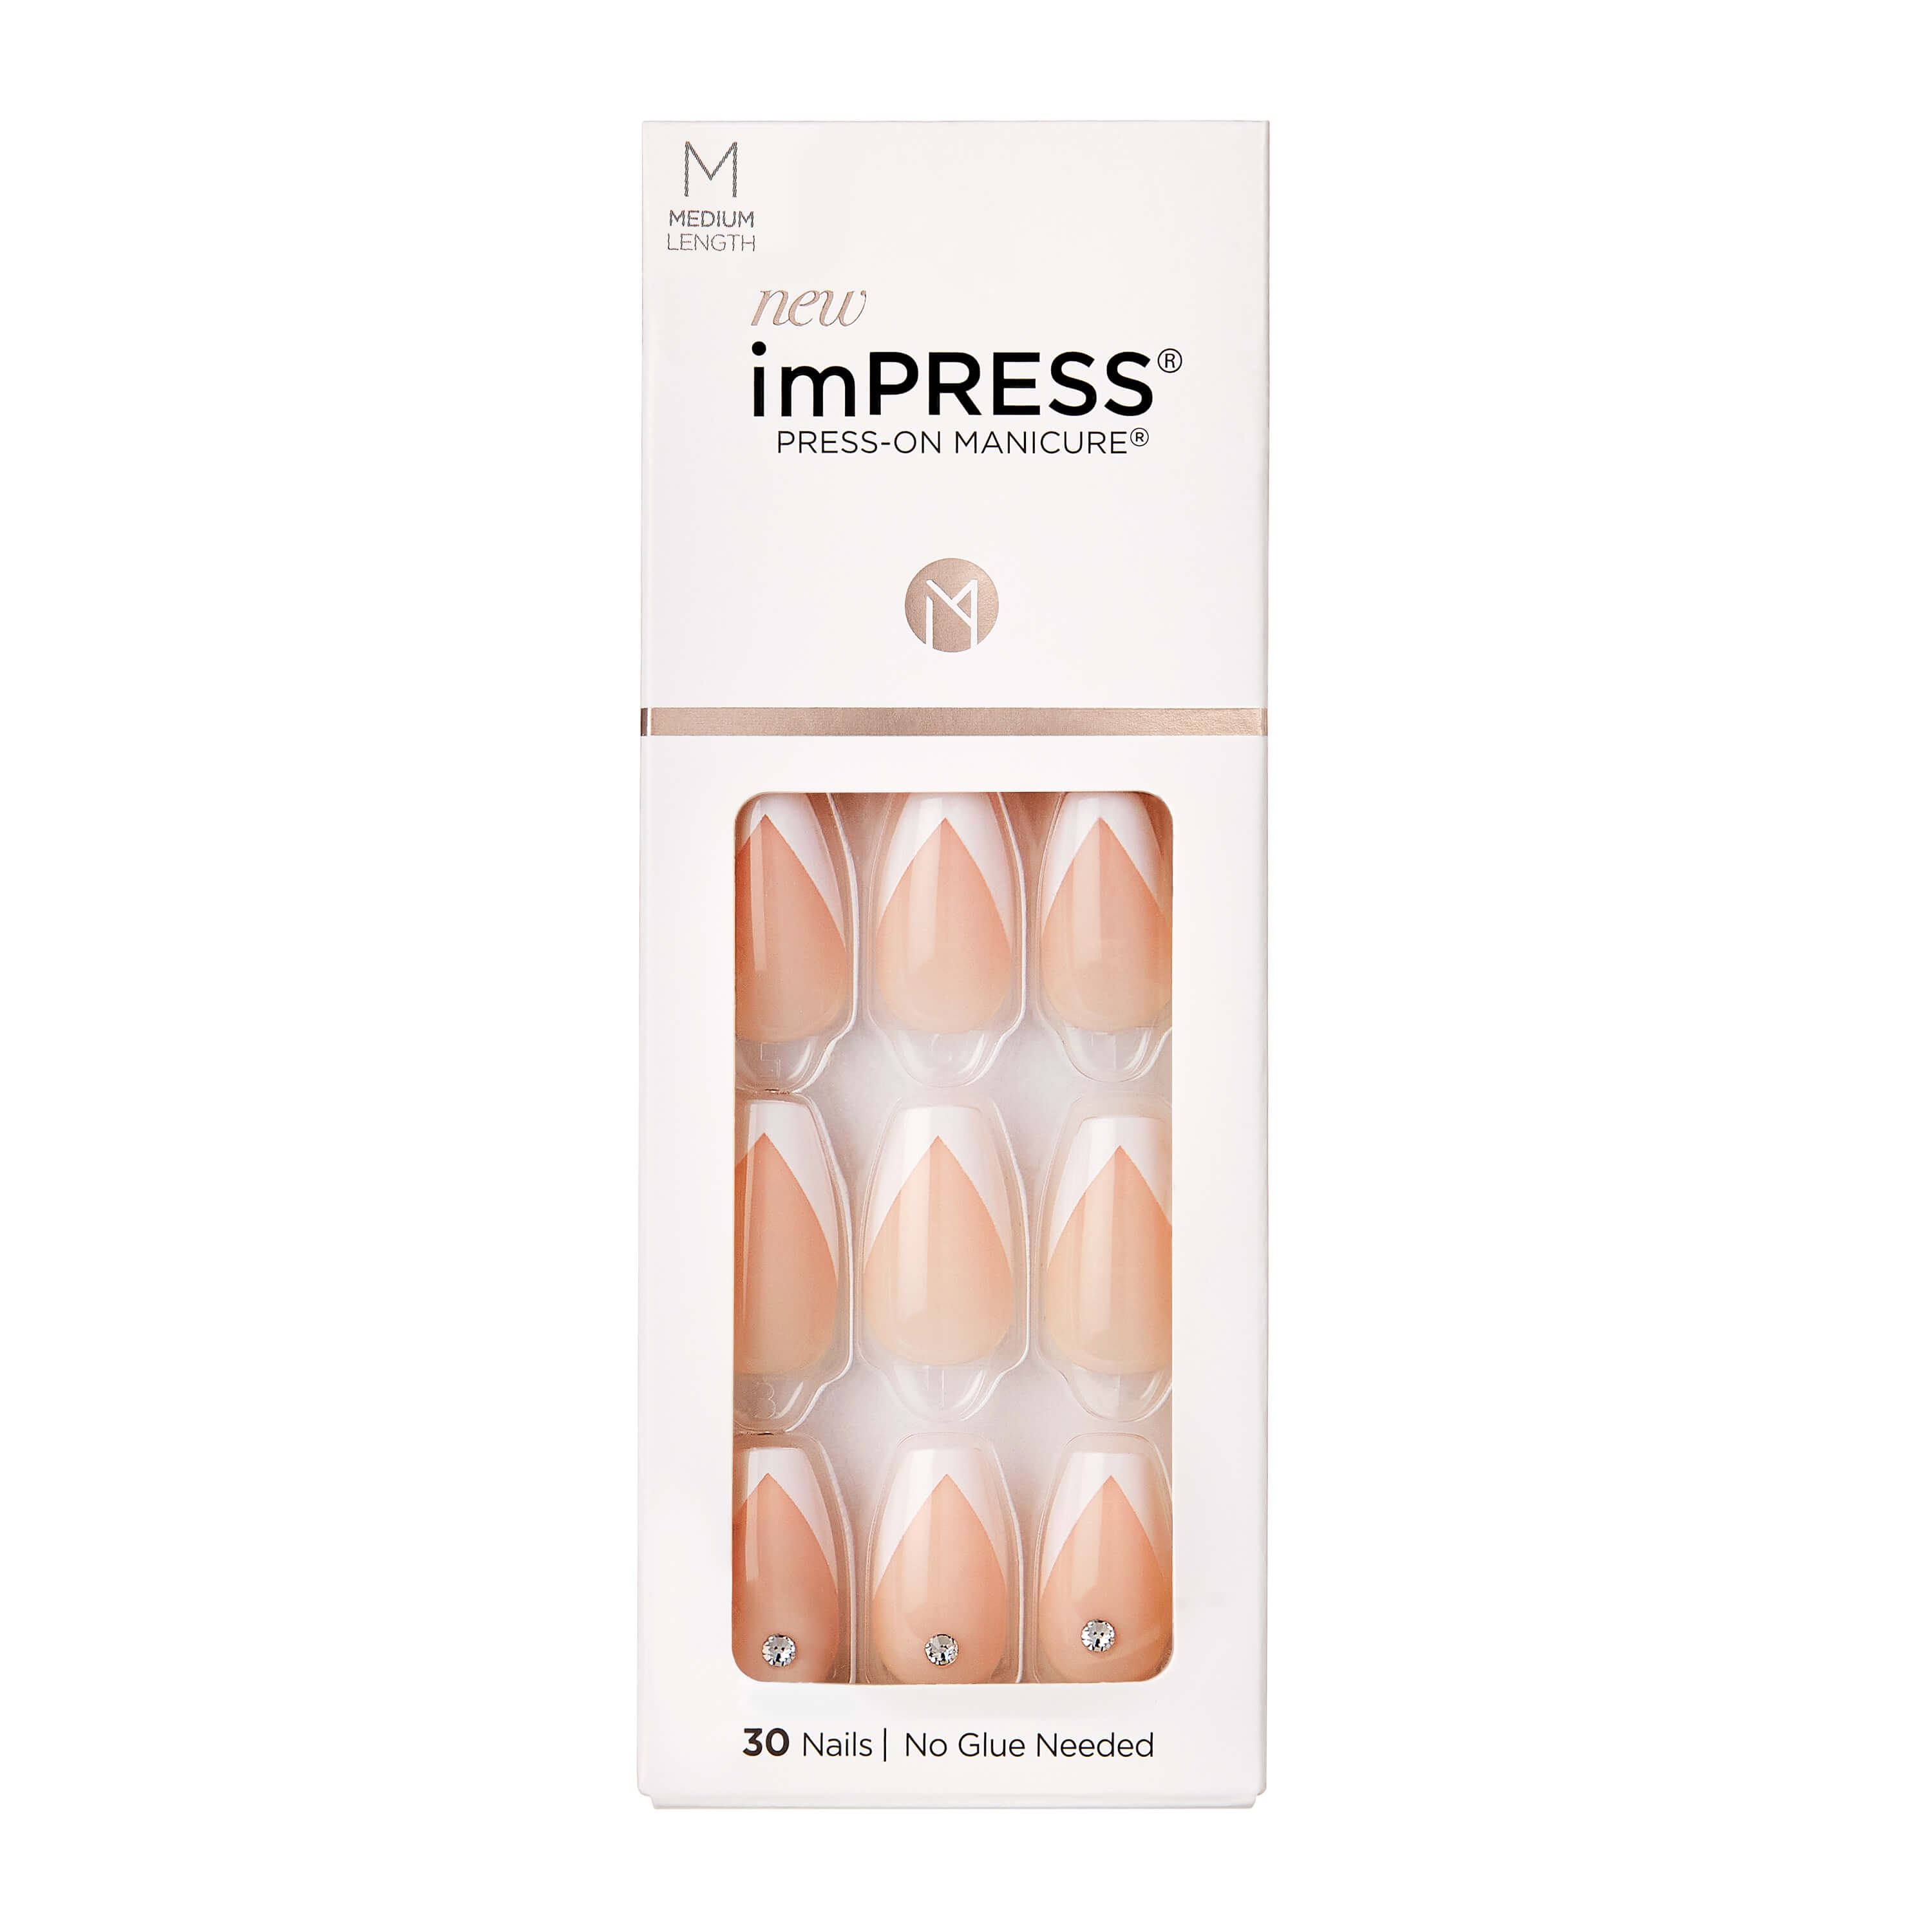 KISS imPRESS Press-On Manicure